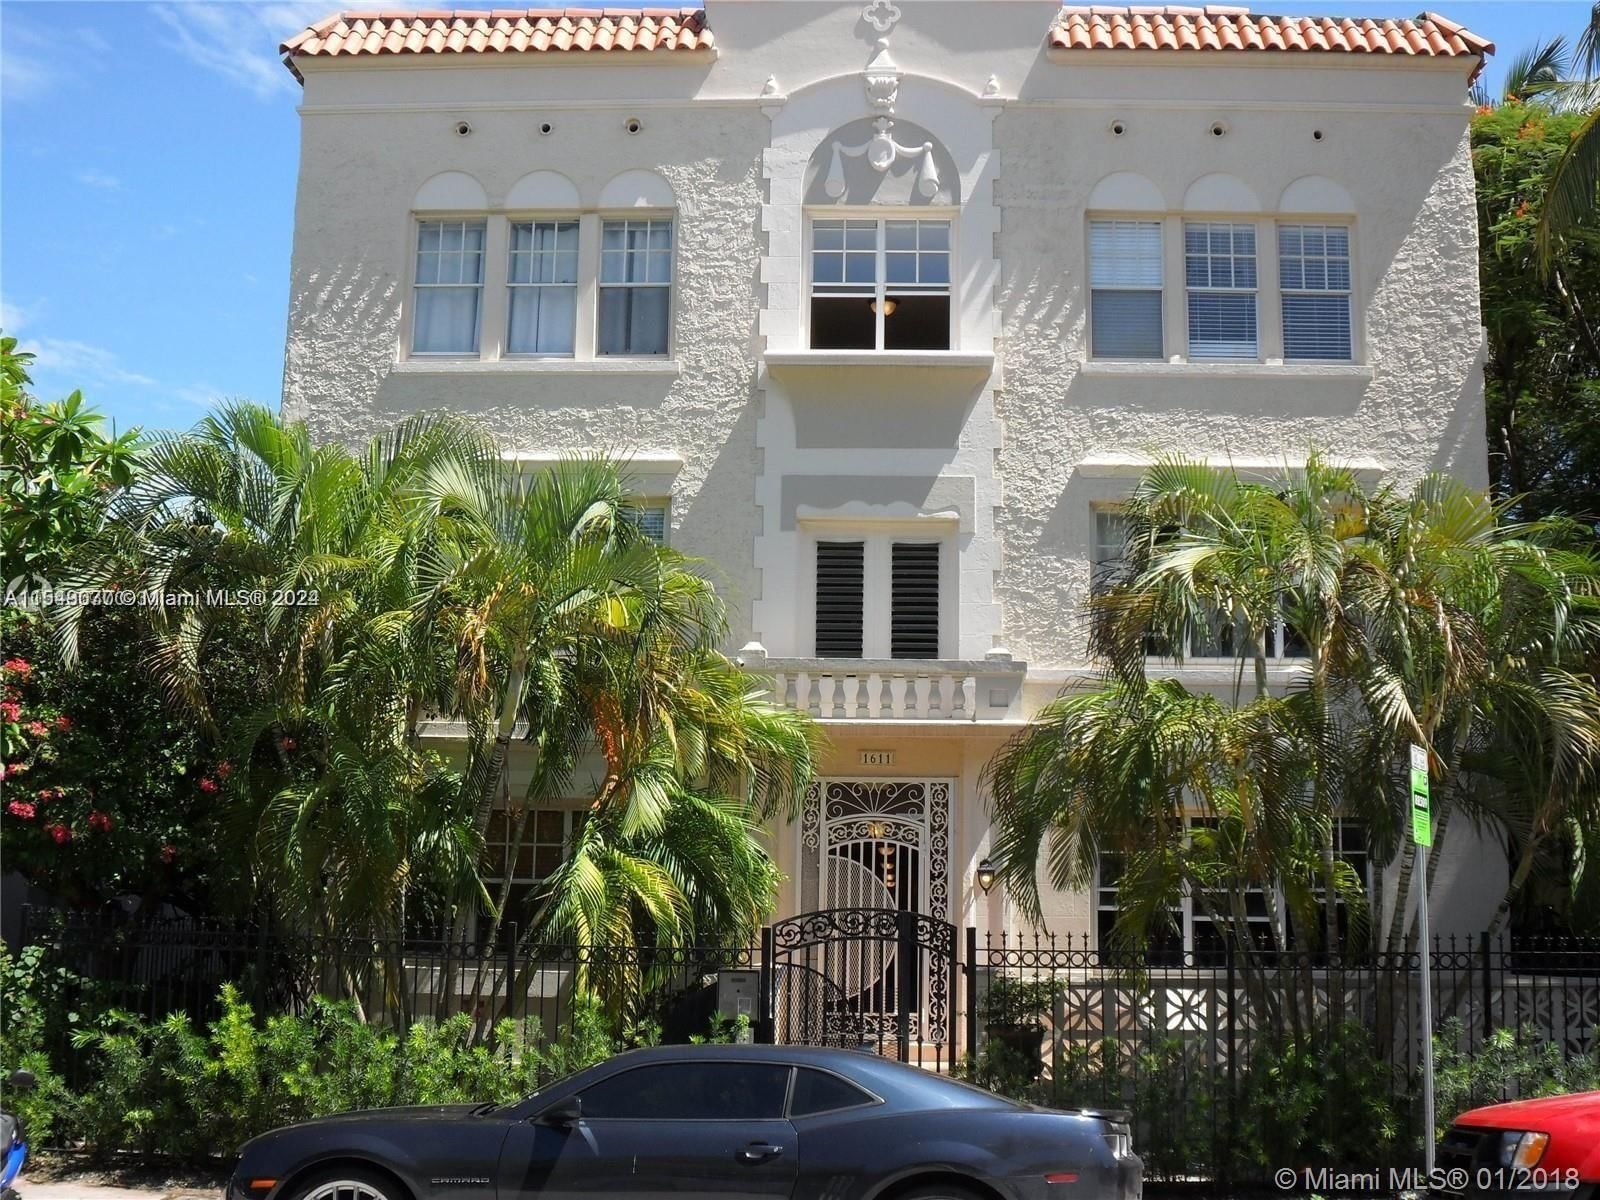 Real estate property located at 1611 Michigan Ave #24, Miami-Dade County, MONTERREY CONDO, Miami Beach, FL